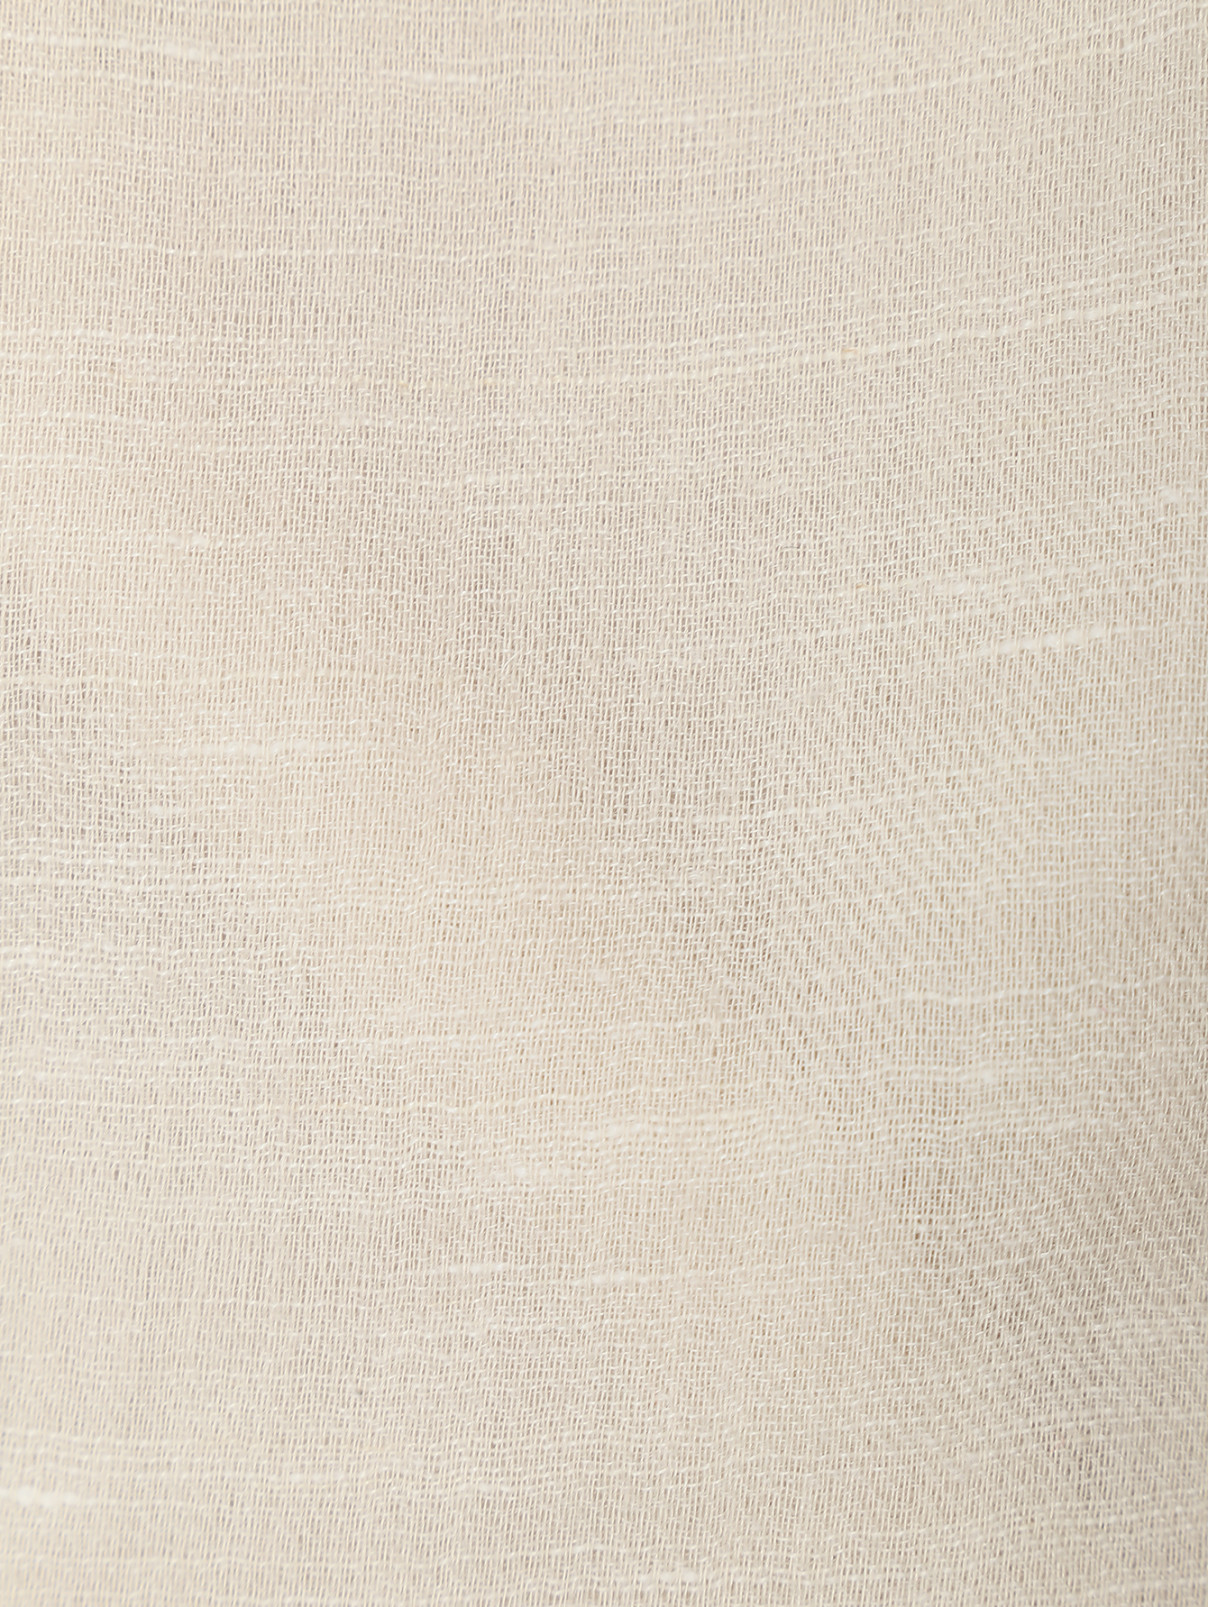 Шарф из кашемира льна и шелка с бахромой Max Mara  –  Деталь  – Цвет:  Серый